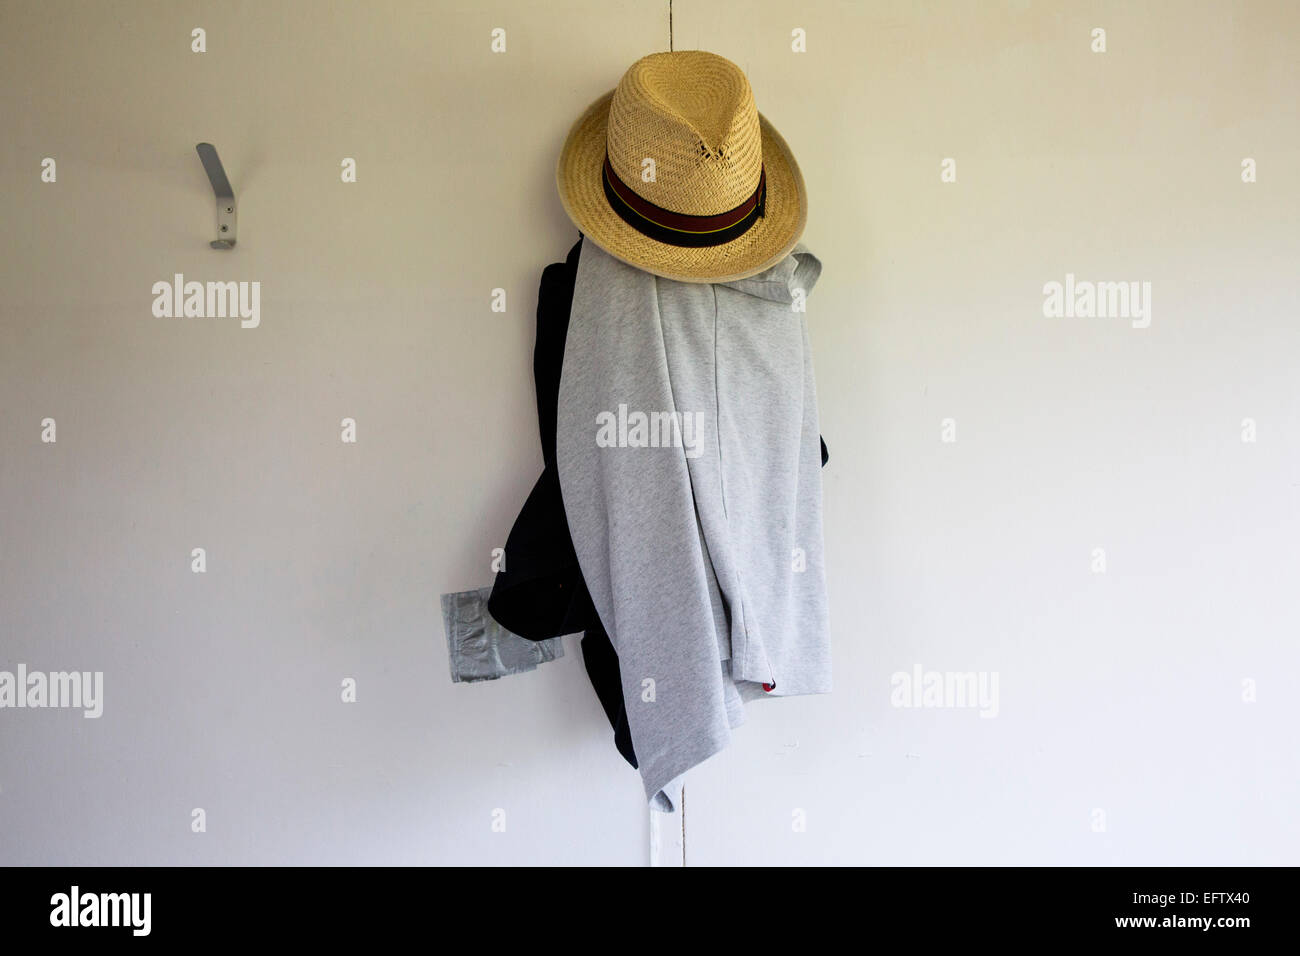 Sombrero de Paja y ropa colgando del gancho de vestuarios Foto de stock